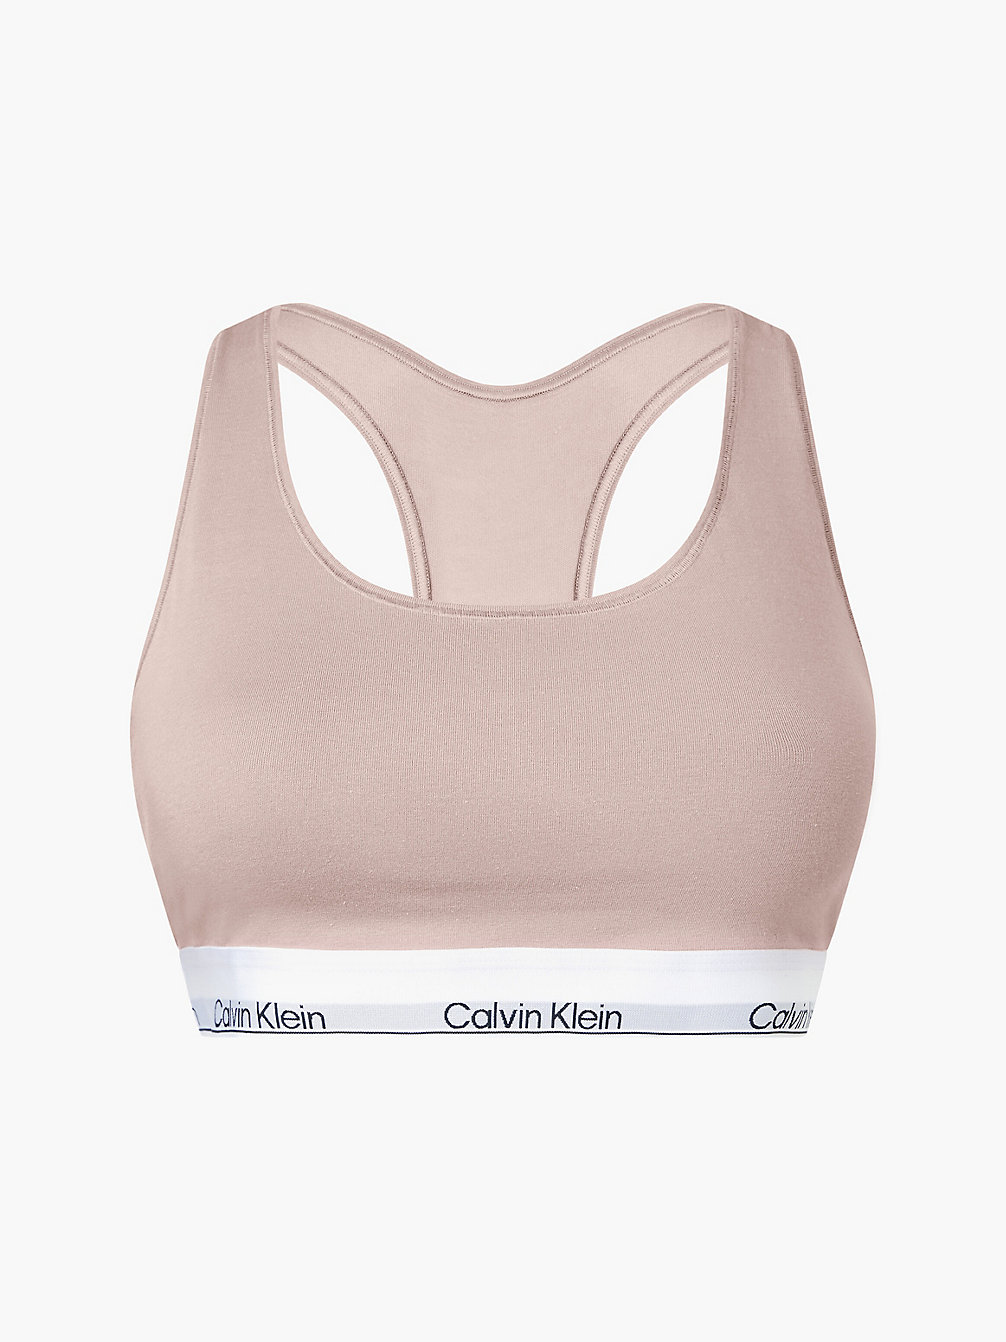 CEDAR Bralette Großen Größen – Modern Cotton undefined Damen Calvin Klein